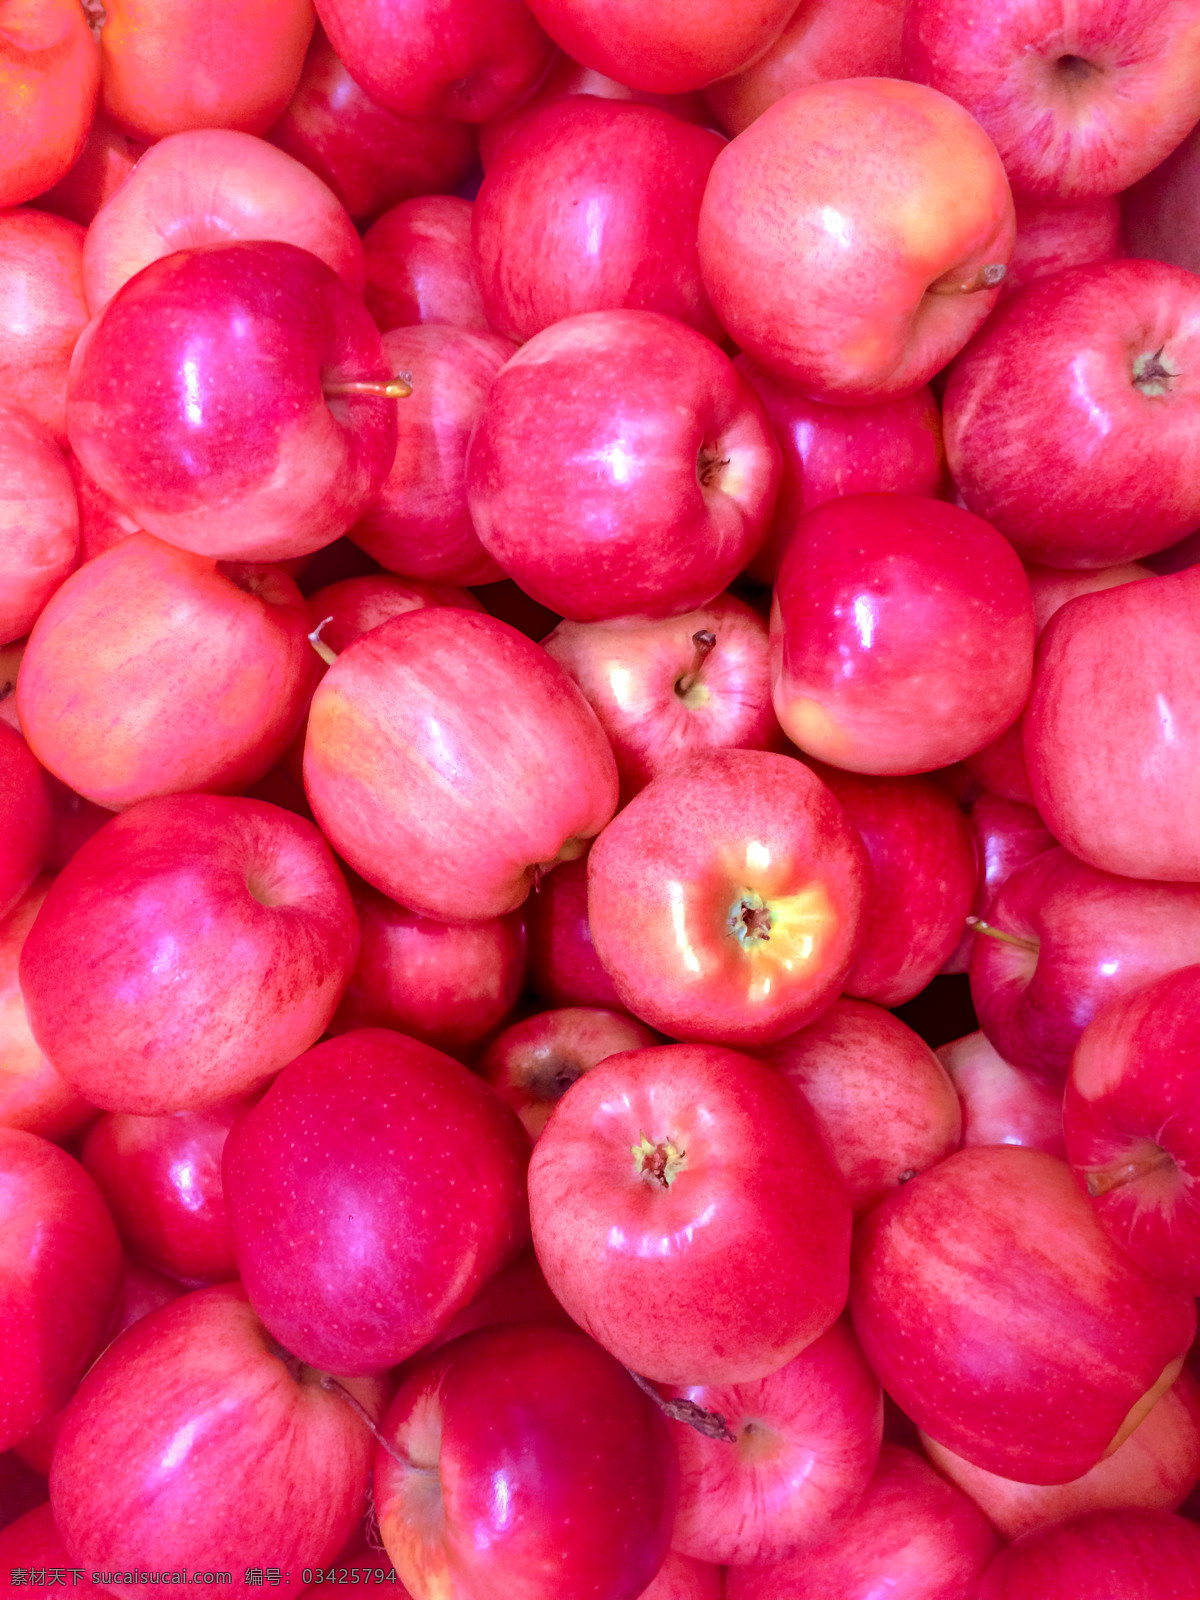 新鲜 好吃 红苹果 新鲜好吃 苹果 水果 香甜可口 大红苹果 生物世界